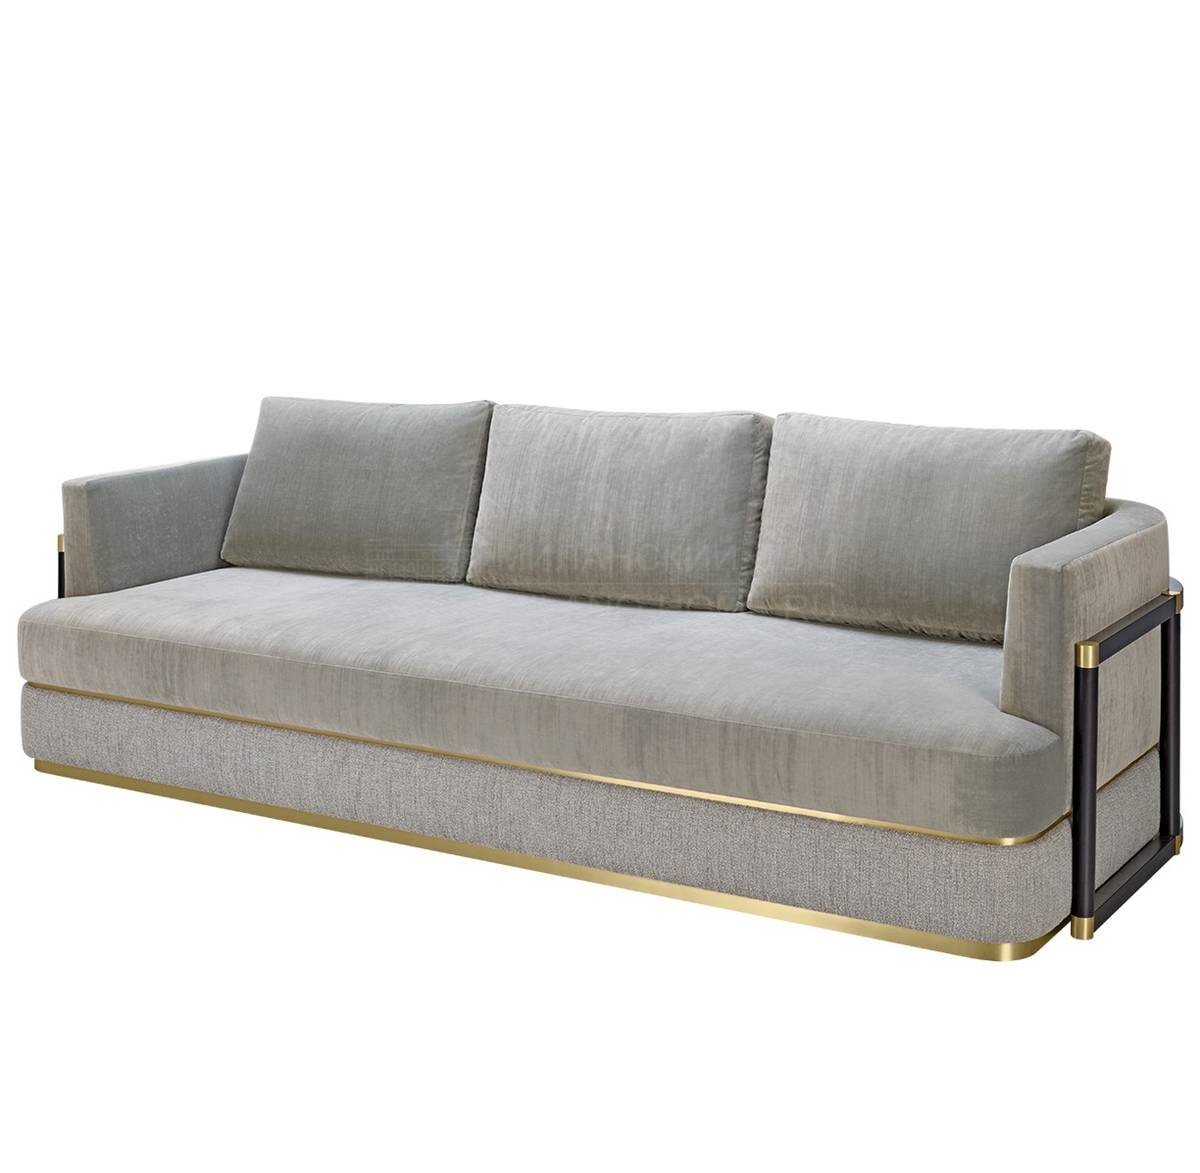 Прямой диван Como sofa из Португалии фабрики FRATO